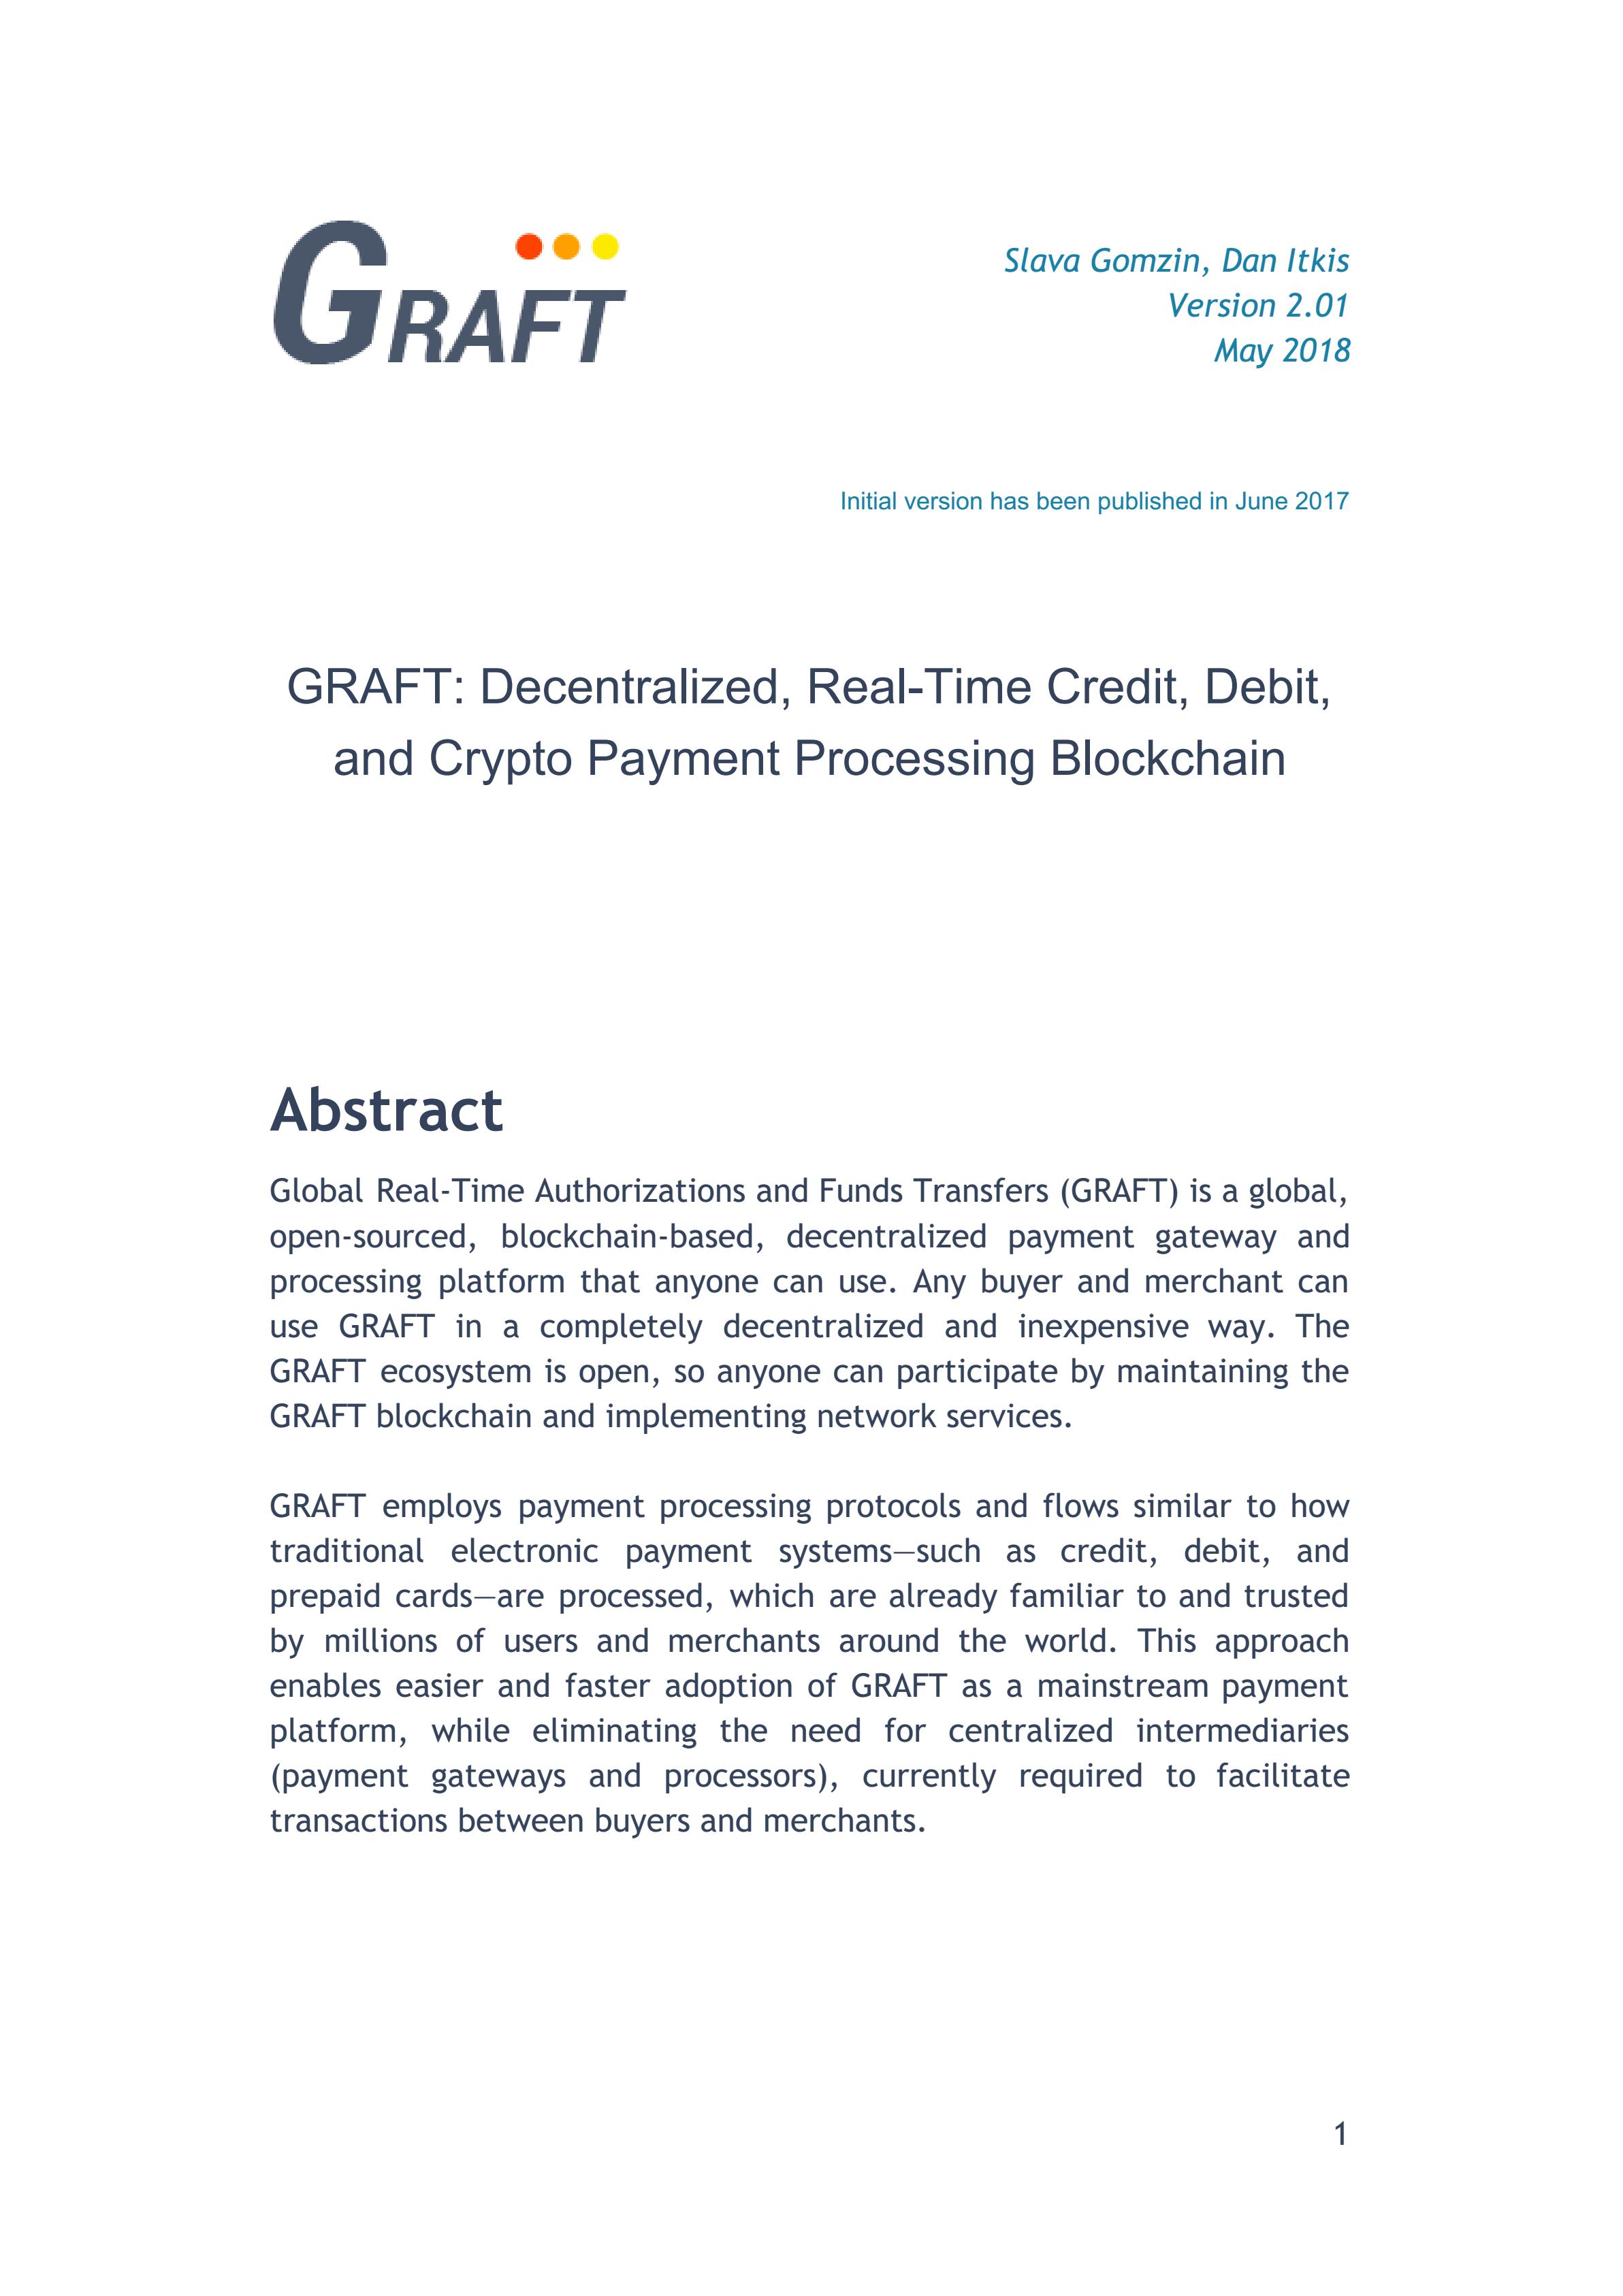 GRFT_Graft_White_Paper_2.01_May_2018_00.jpg